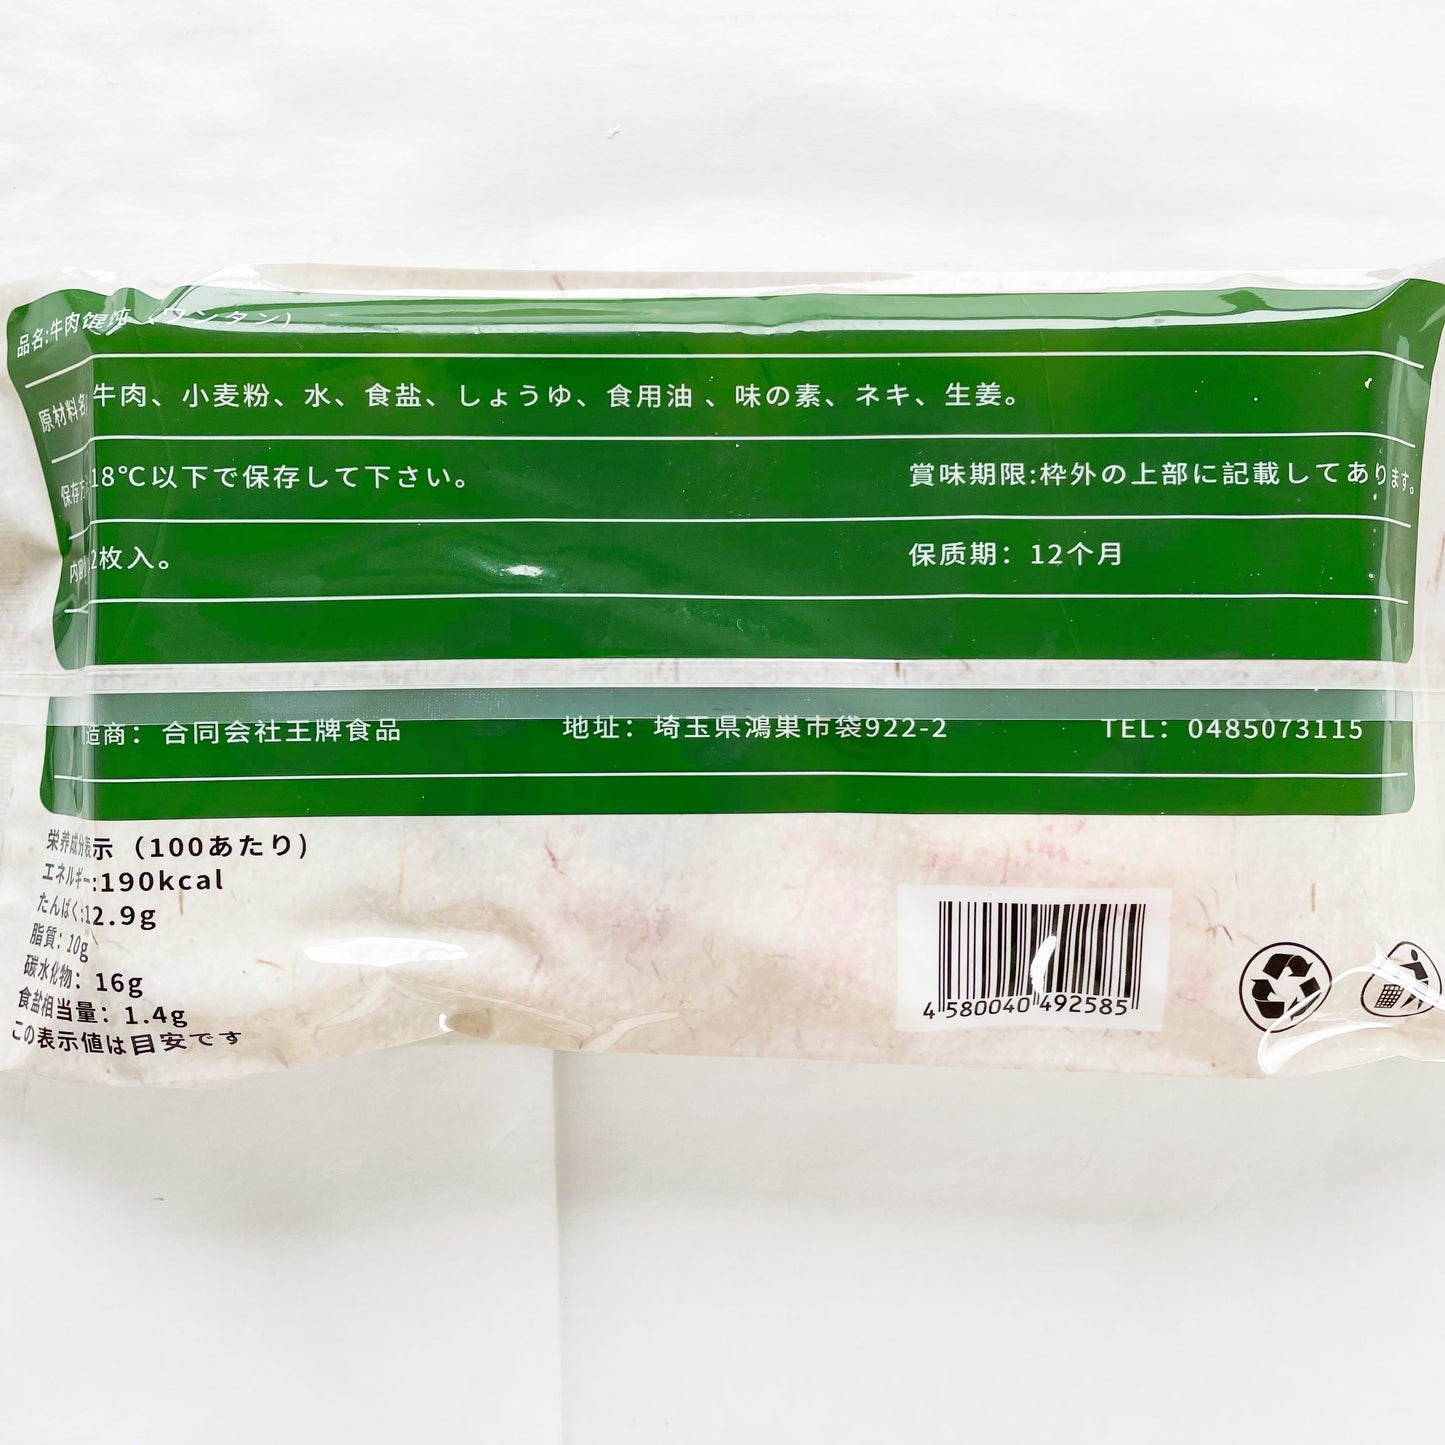 手工 牛肉香姑雲呑18g*12枚入  日本国内加工  冷凍品